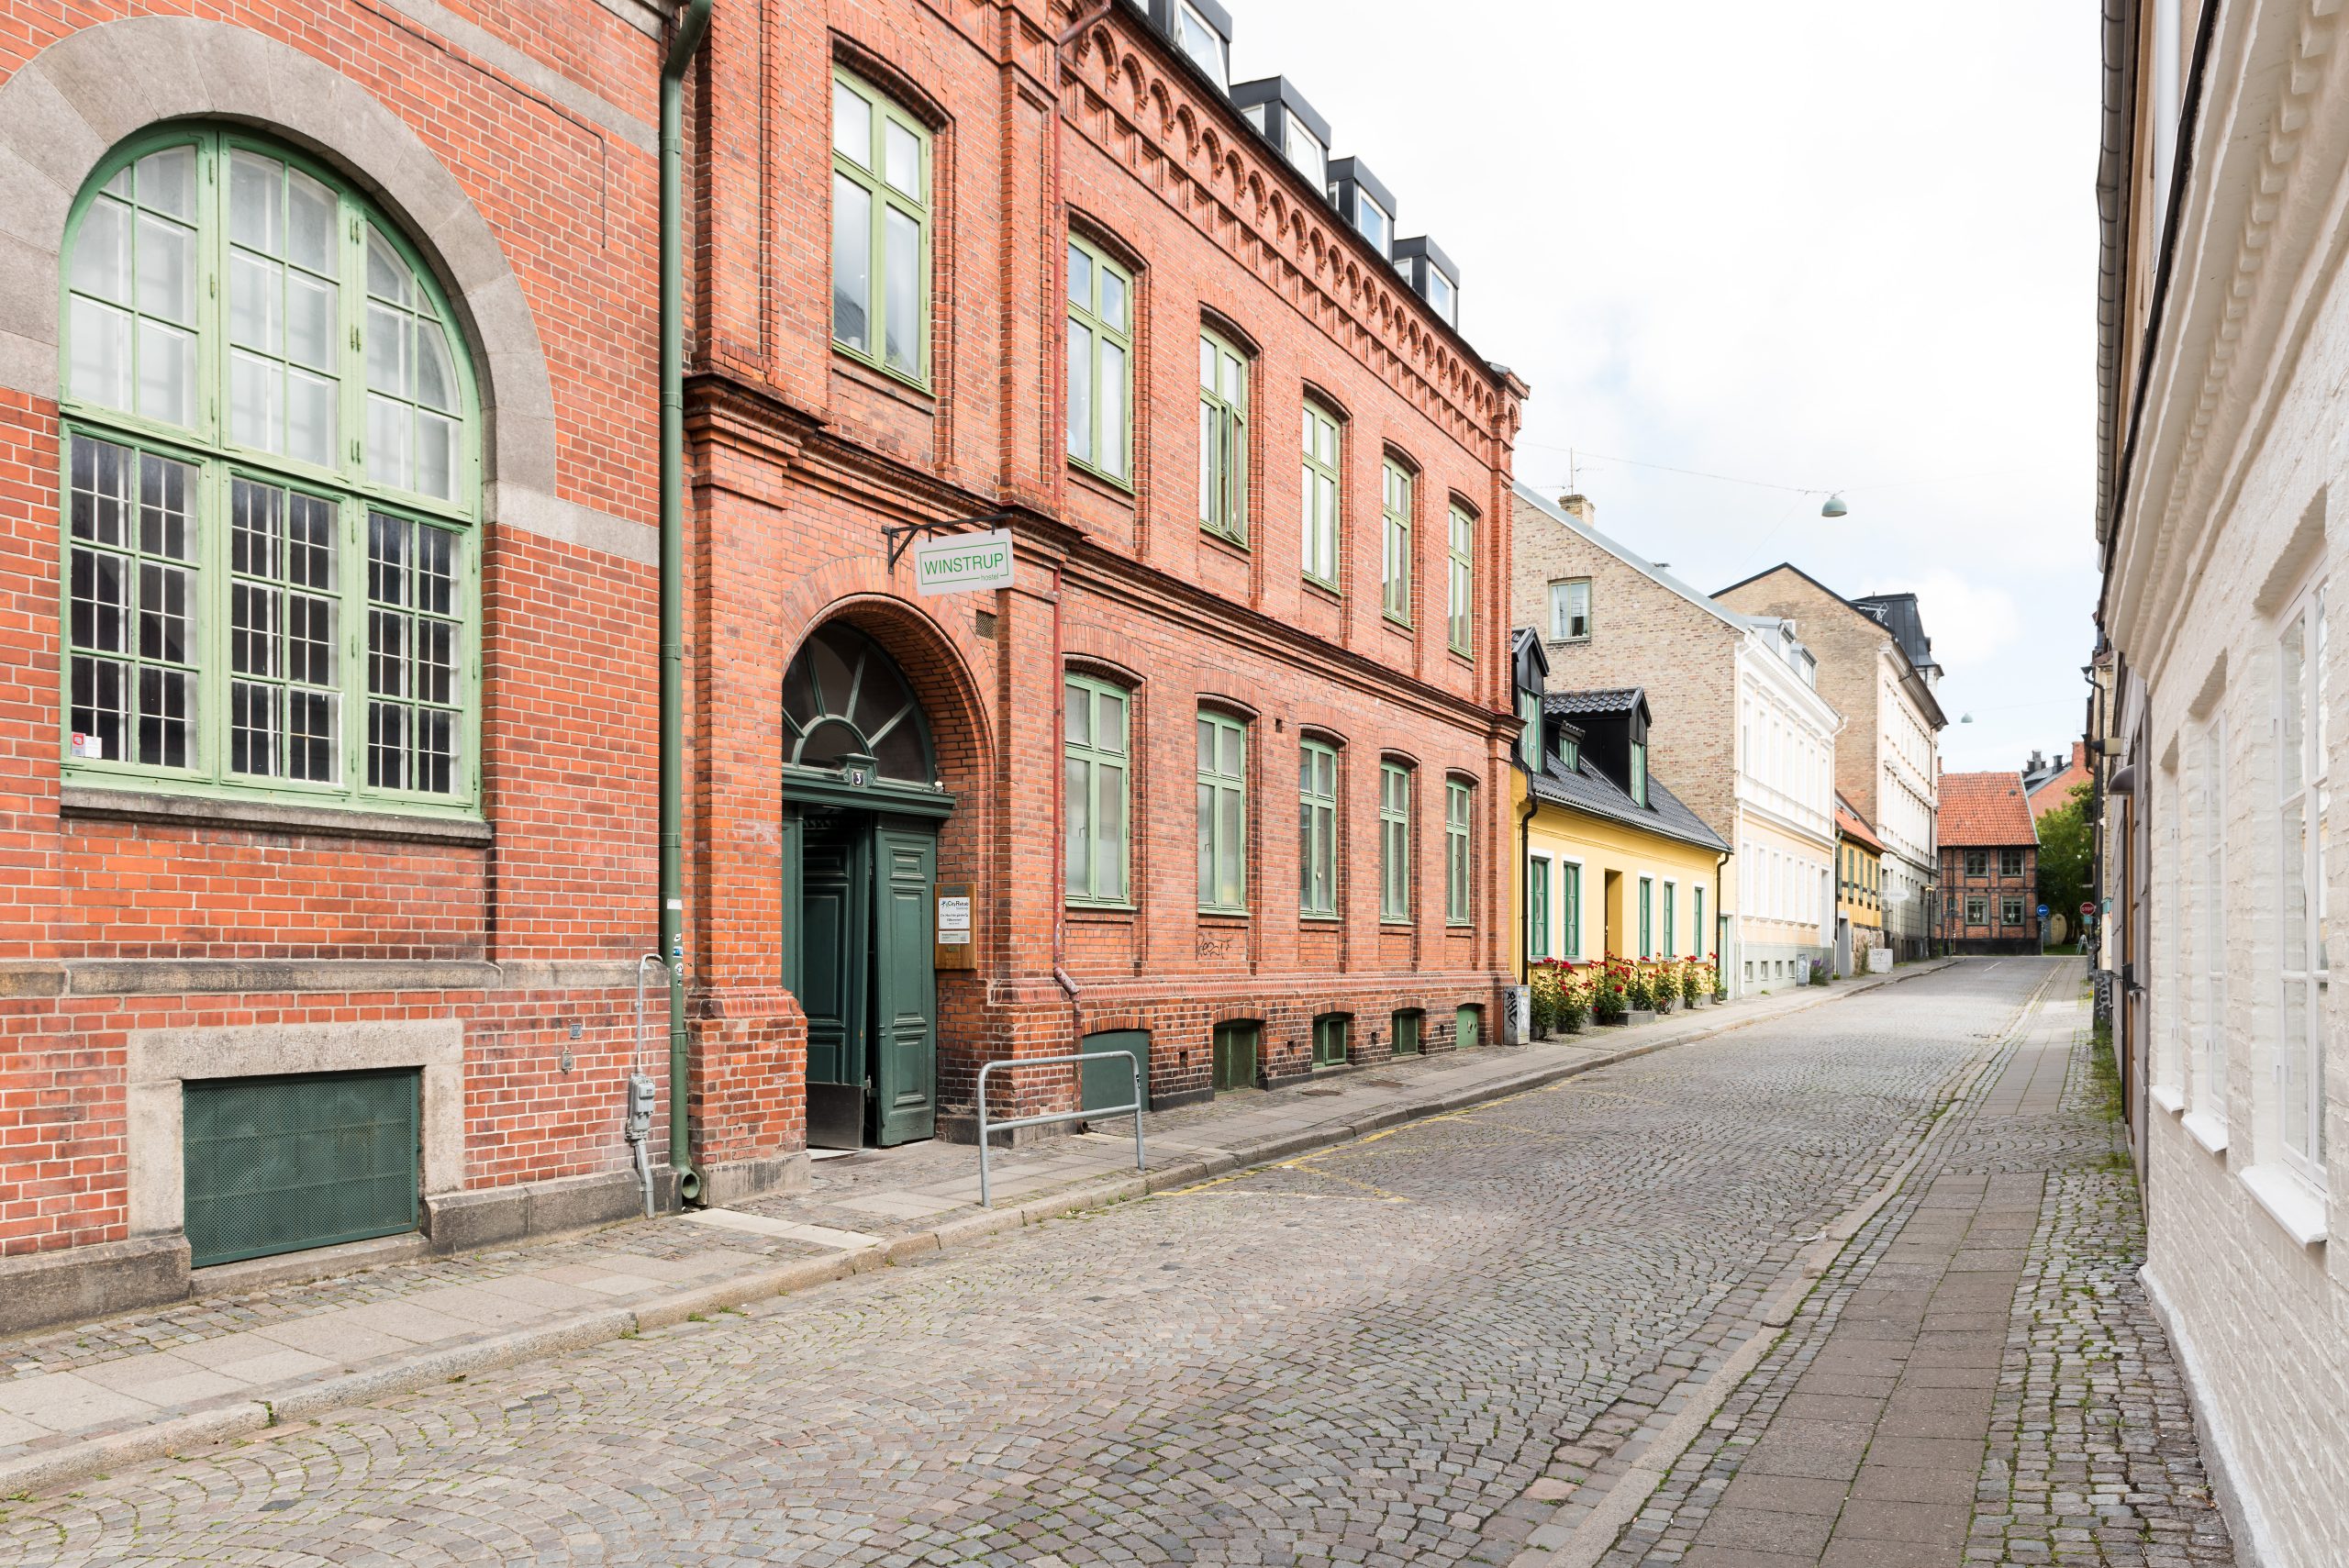 Winstrup Hostel och Hotel i centrala Lund, bara ett stenkast från domkyrkan